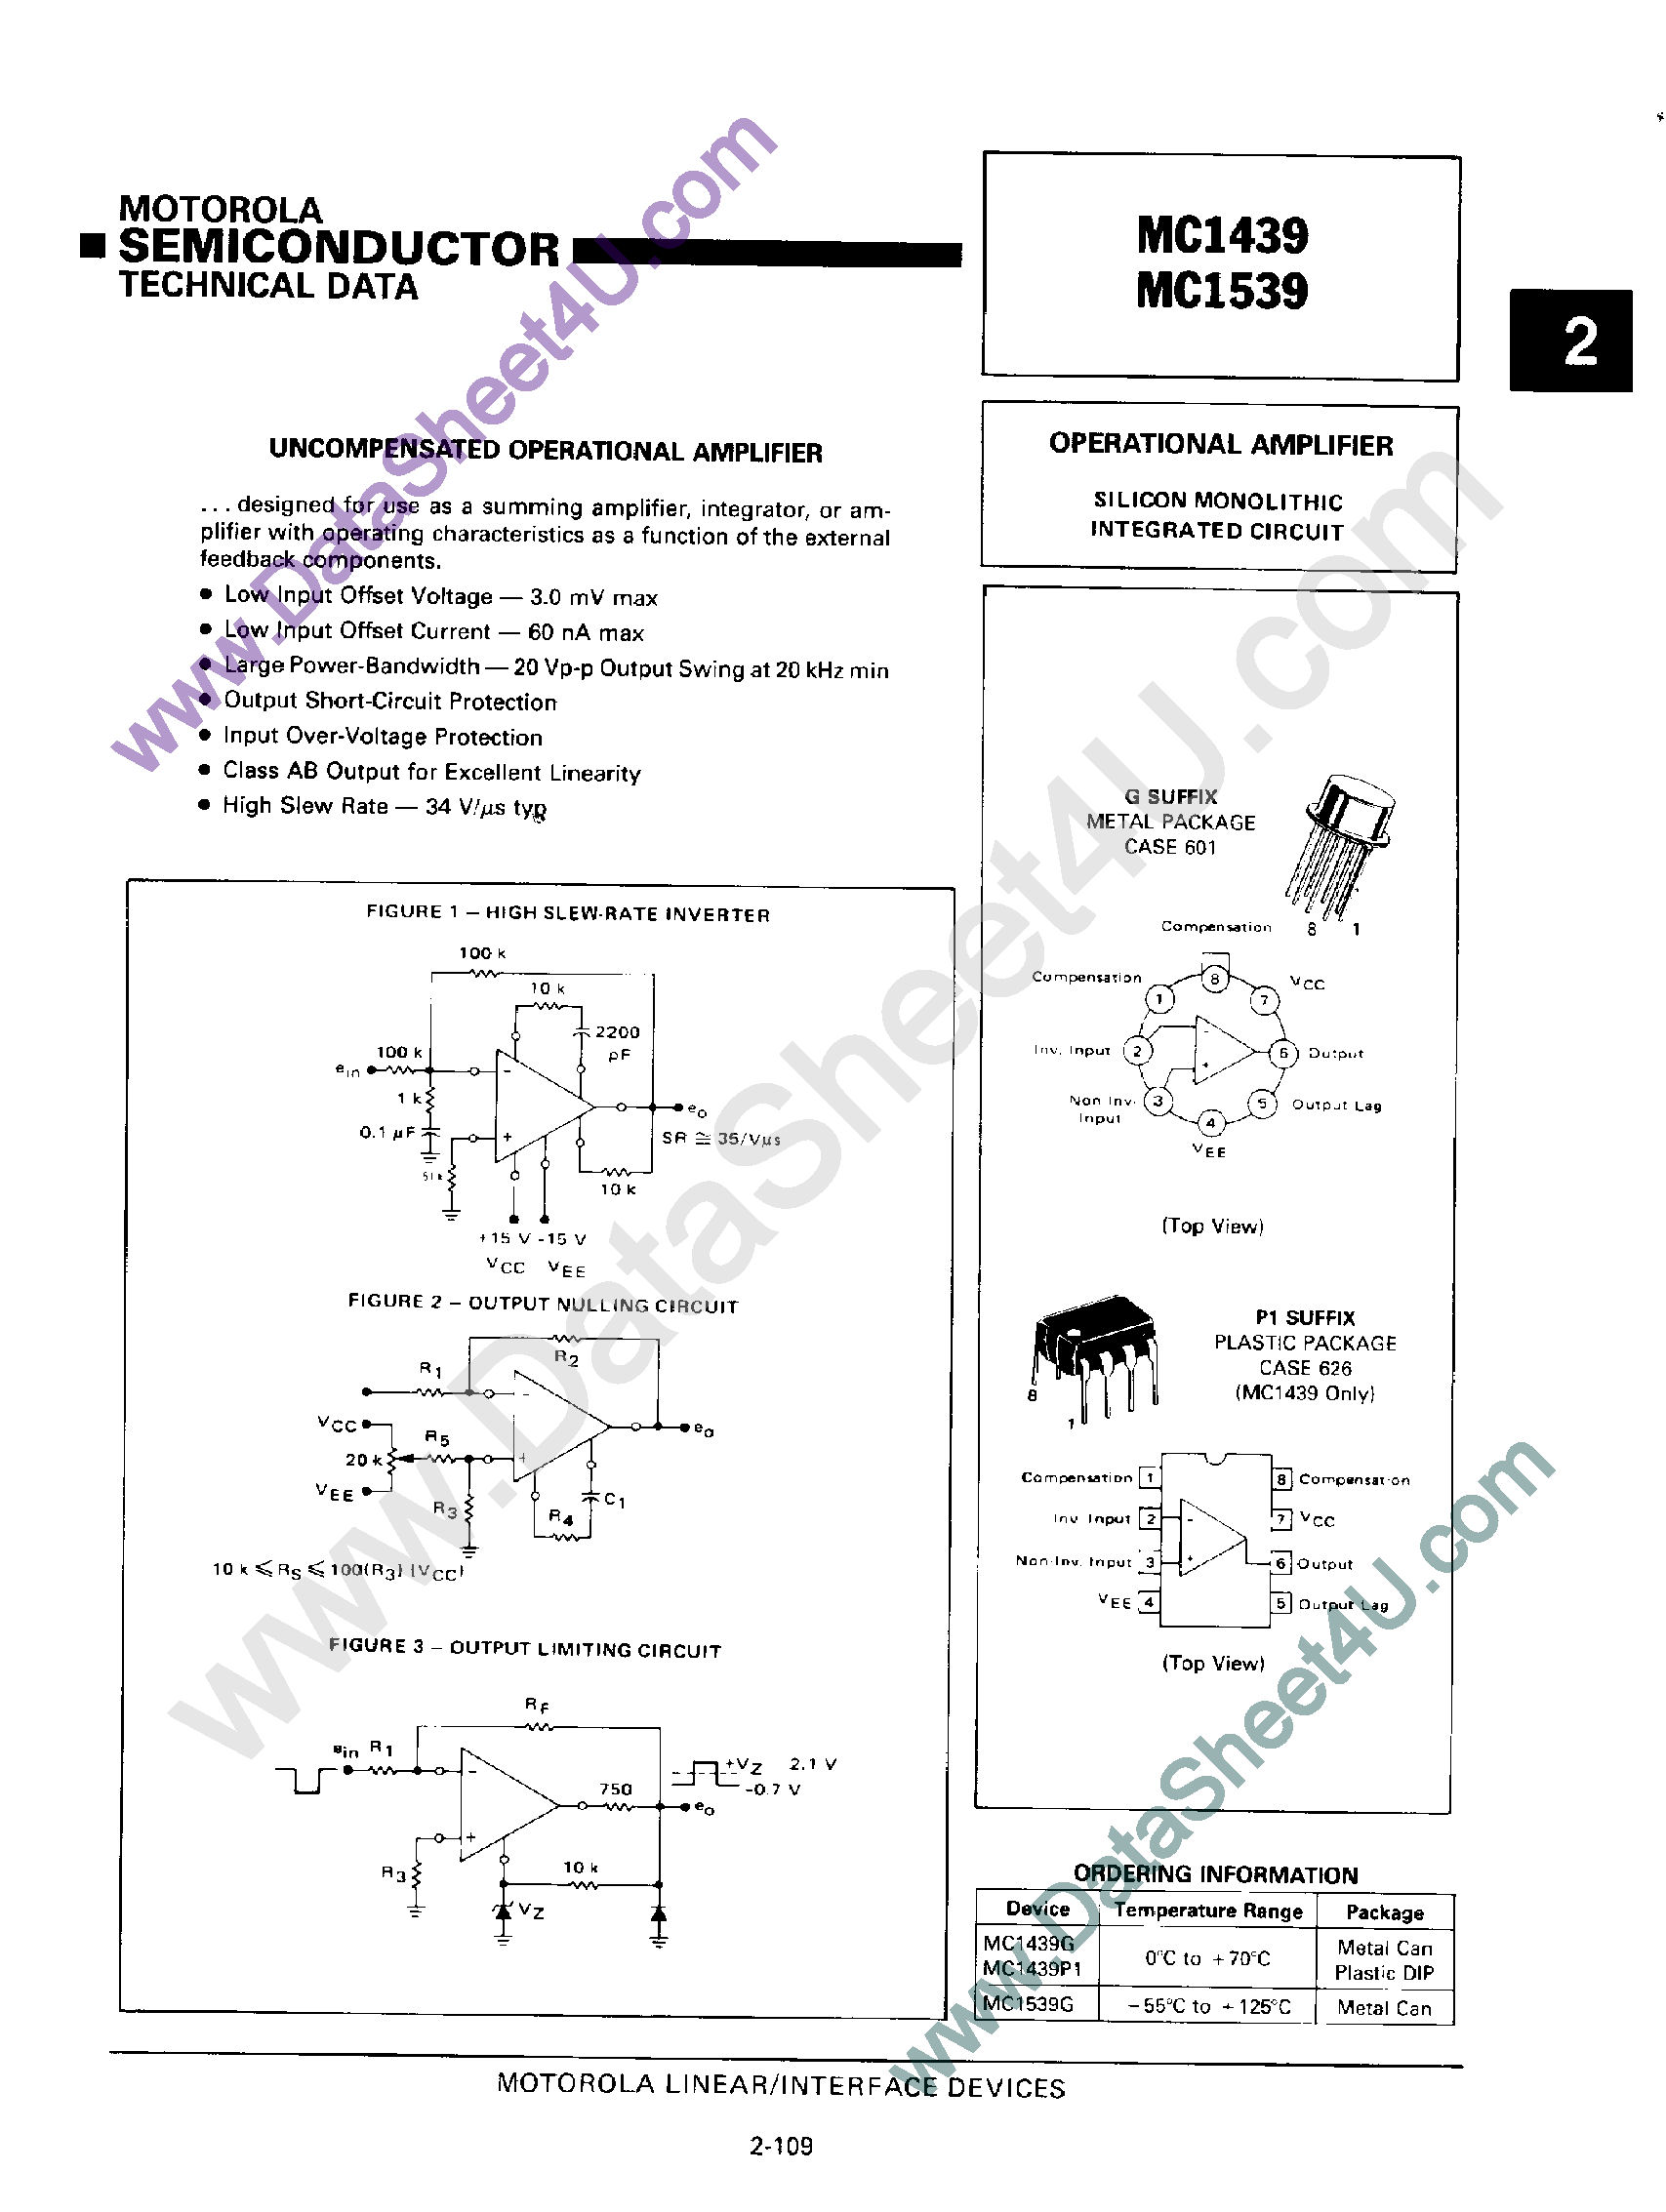 Даташит MC1439 - (MC1439 / MC1539) Uncompensated Operational Amplifier страница 1